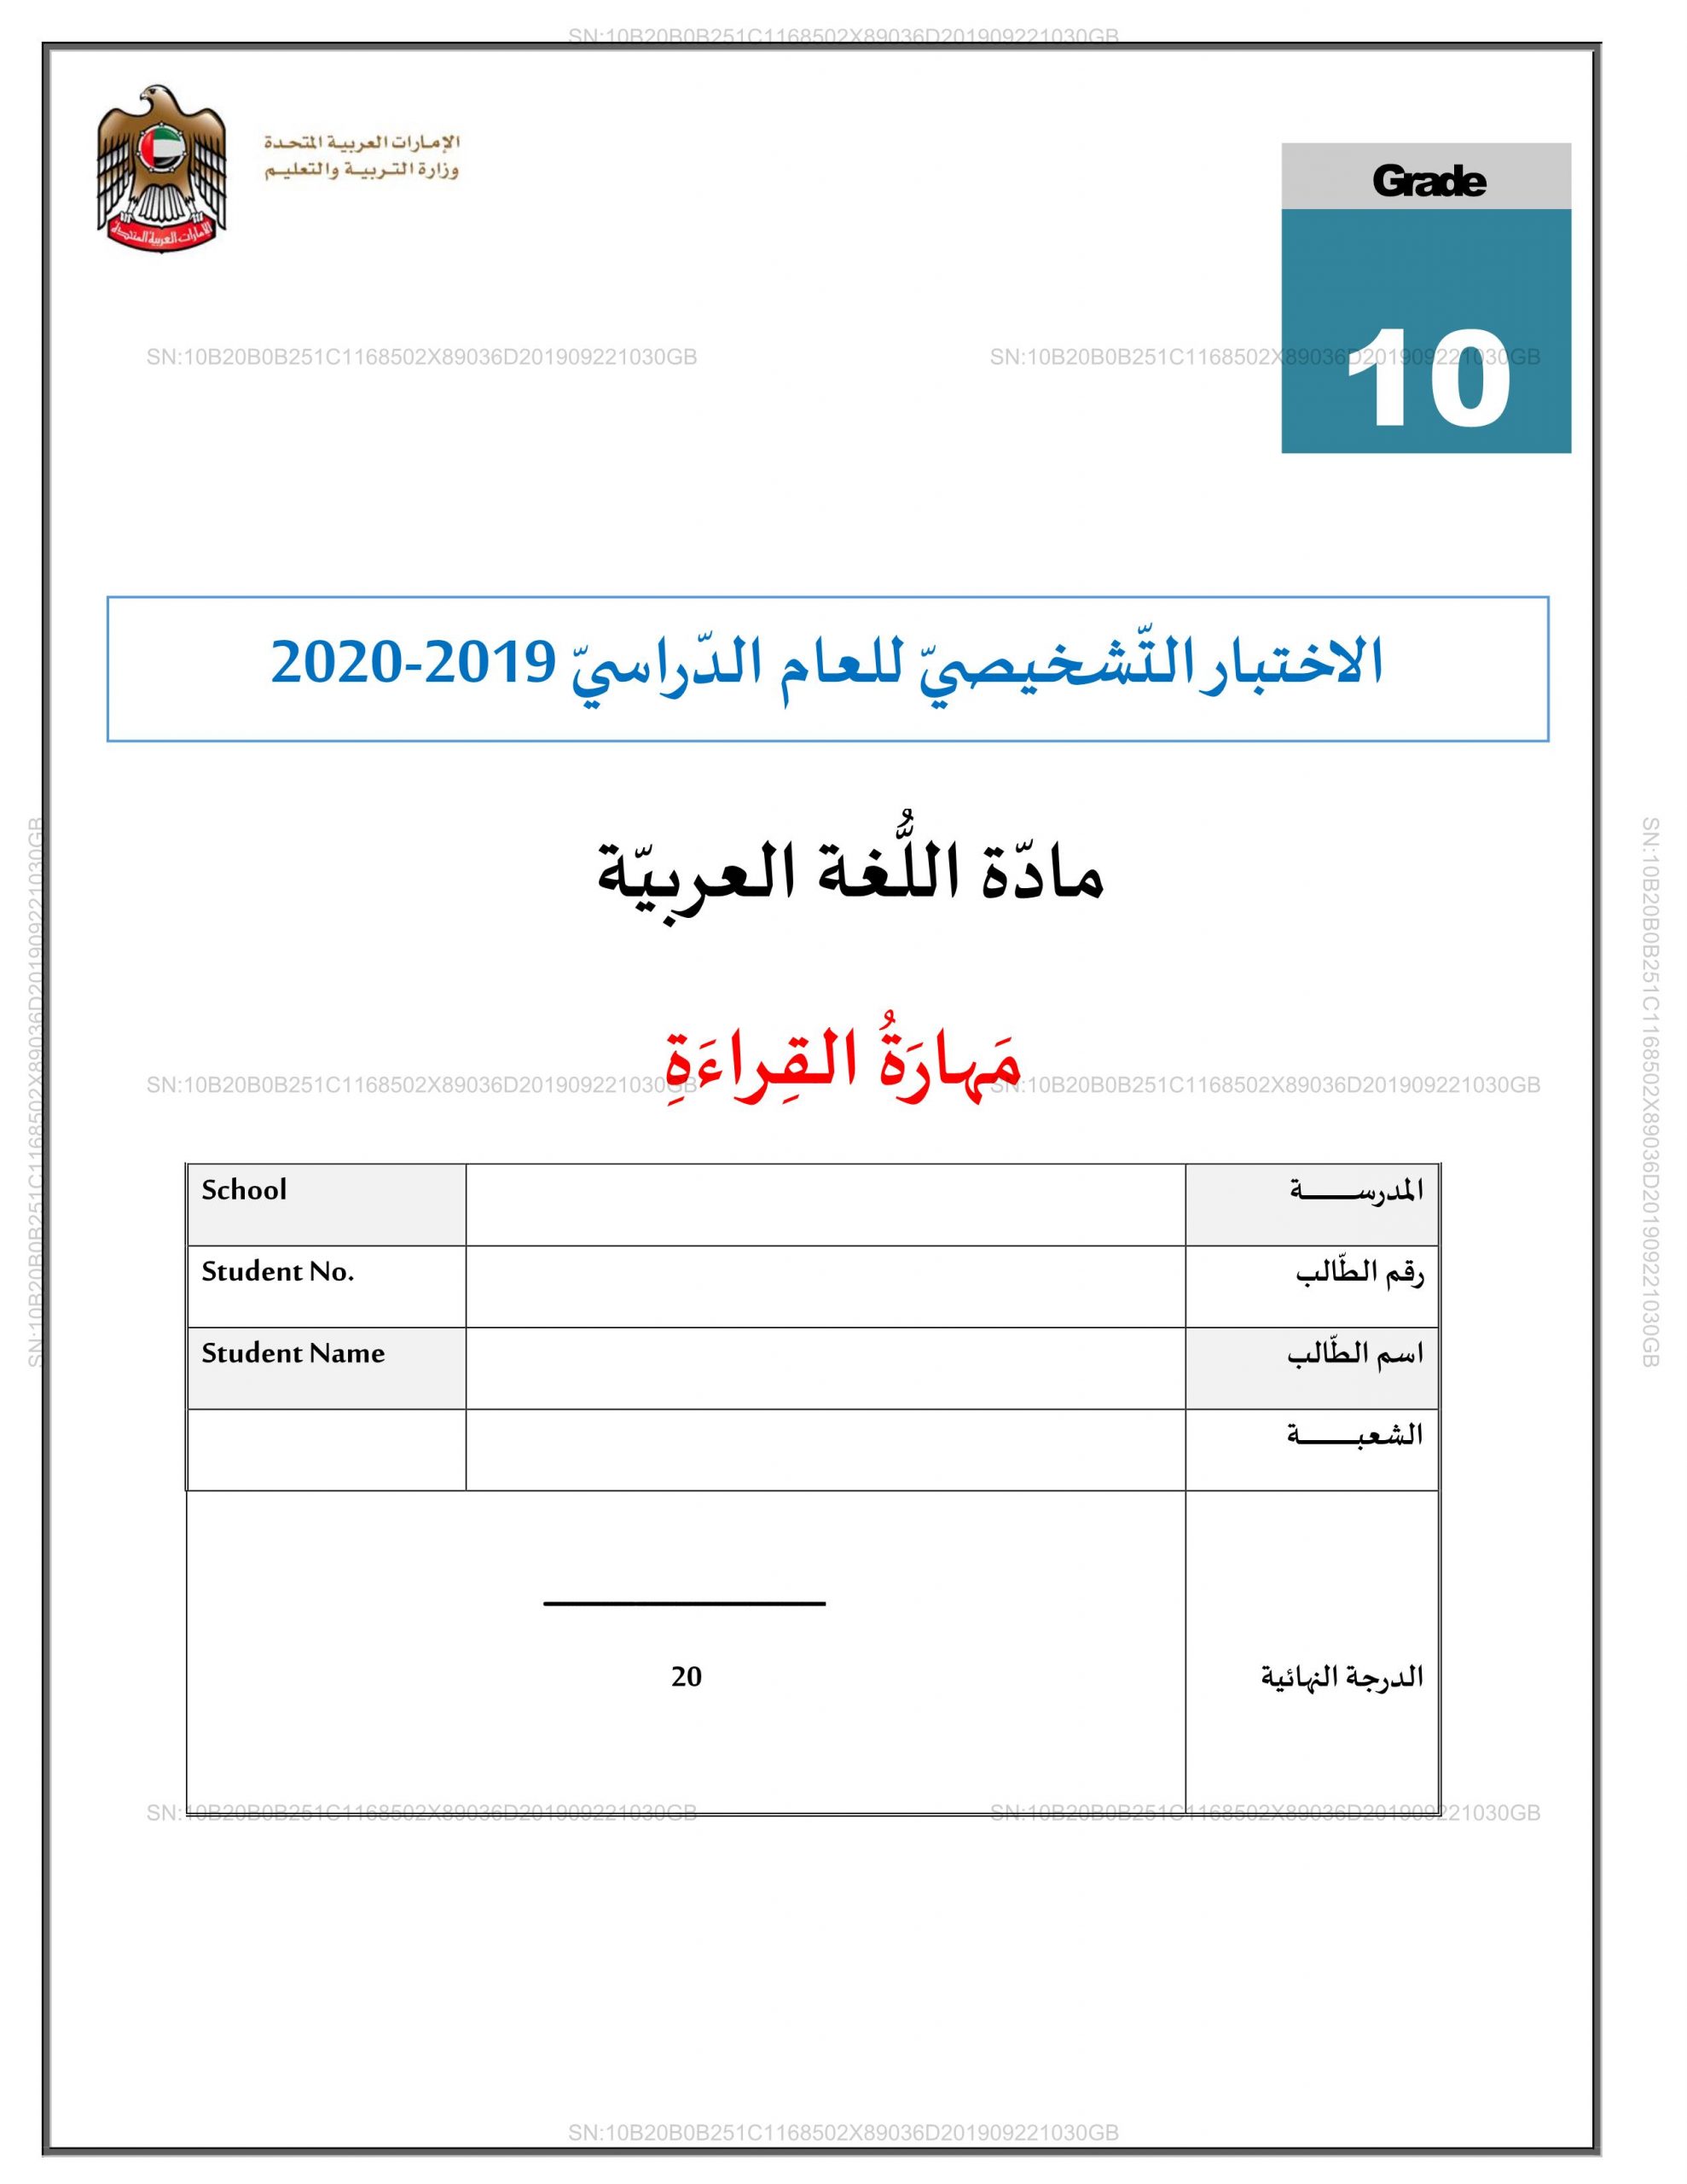 الاختبار التشخيصي مهارة القراءة للصف العاشر مادة اللغة العربية